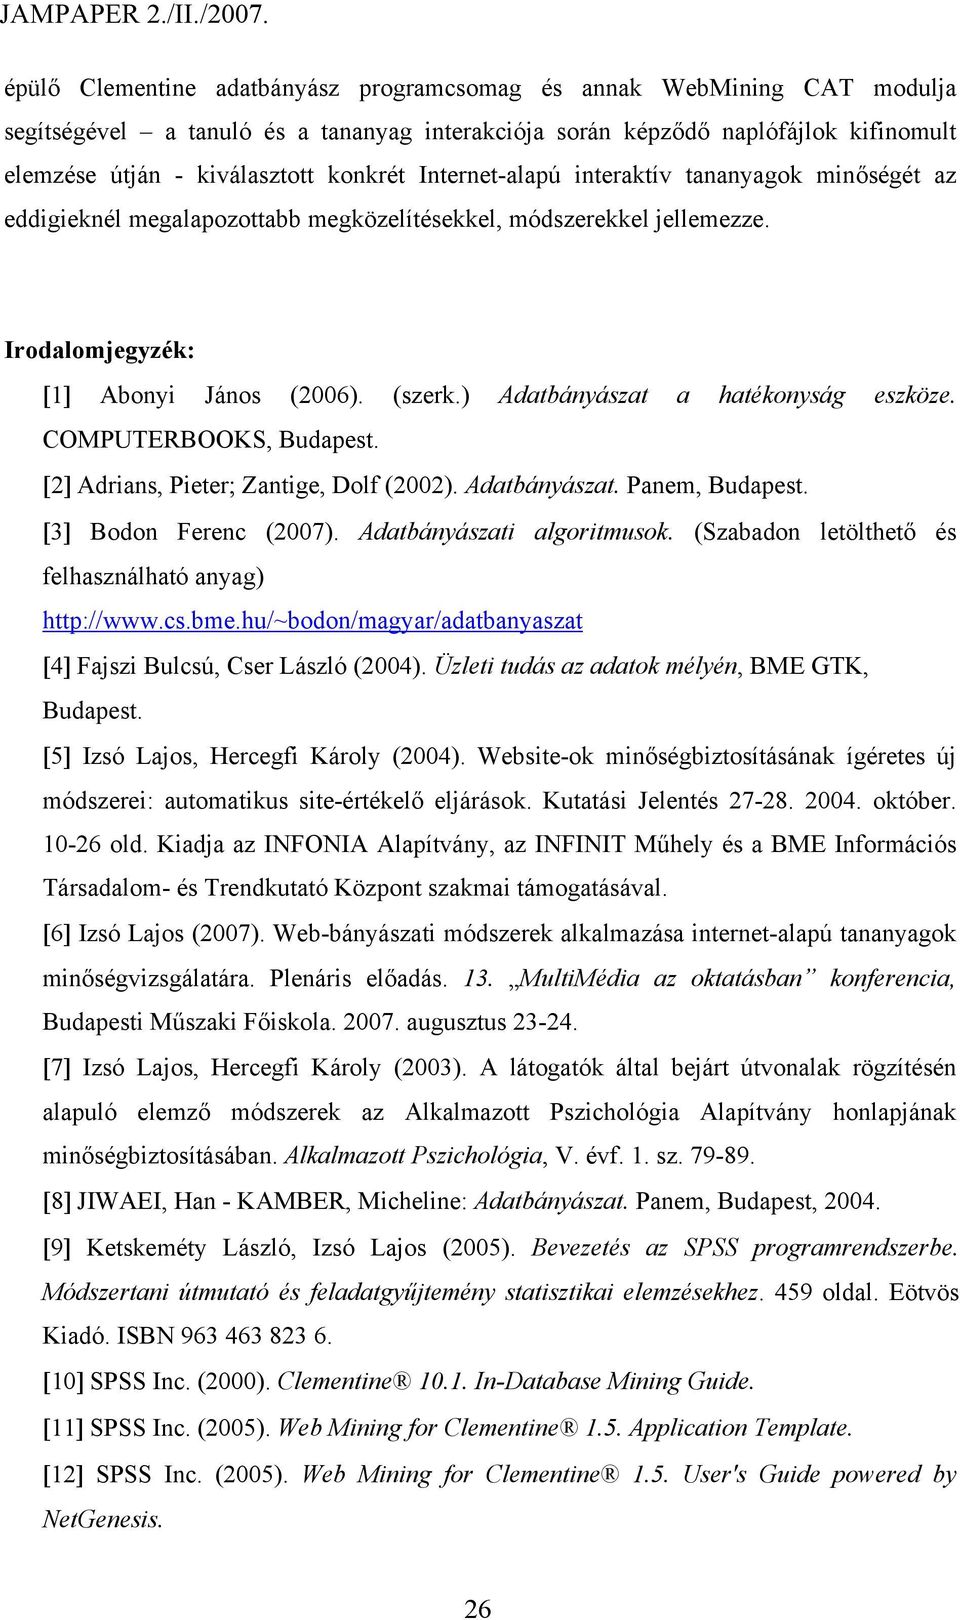 ) Adatbányászat a hatékonyság eszköze. COMPUTERBOOKS, Budapest. [2] Adrians, Pieter; Zantige, Dolf (2002). Adatbányászat. Panem, Budapest. [3] Bodon Ferenc (2007). Adatbányászati algoritmusok.